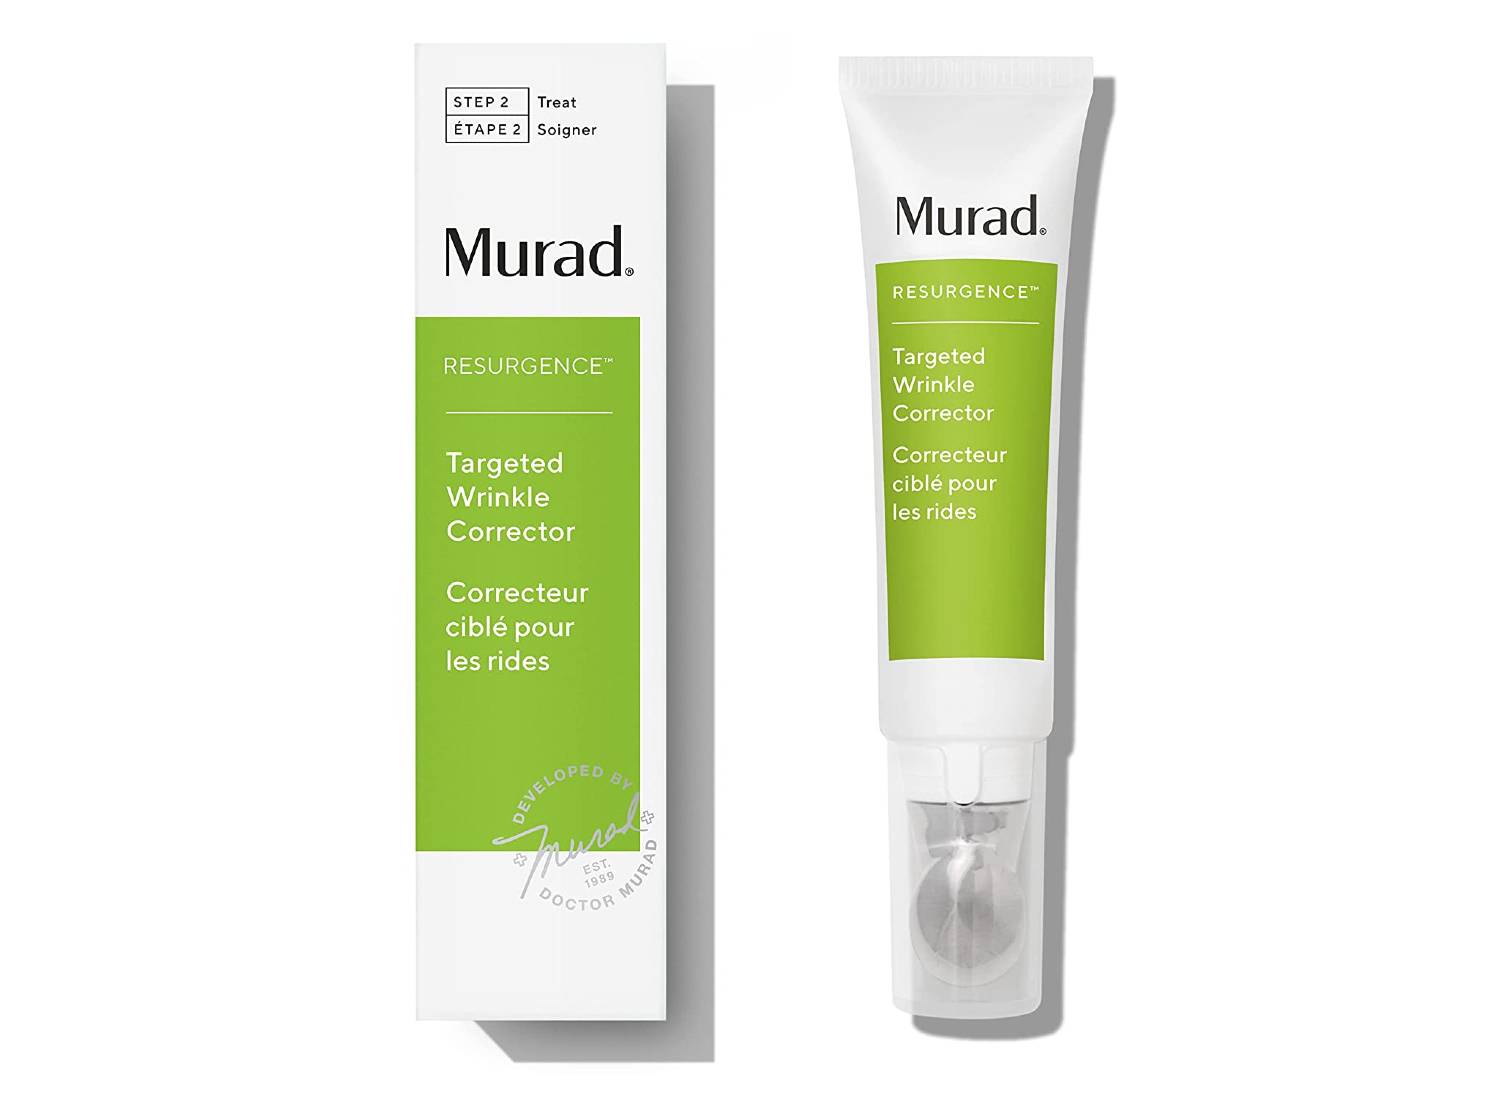 Bottle of Murad's Targeted Wrinkle Corrector skincare